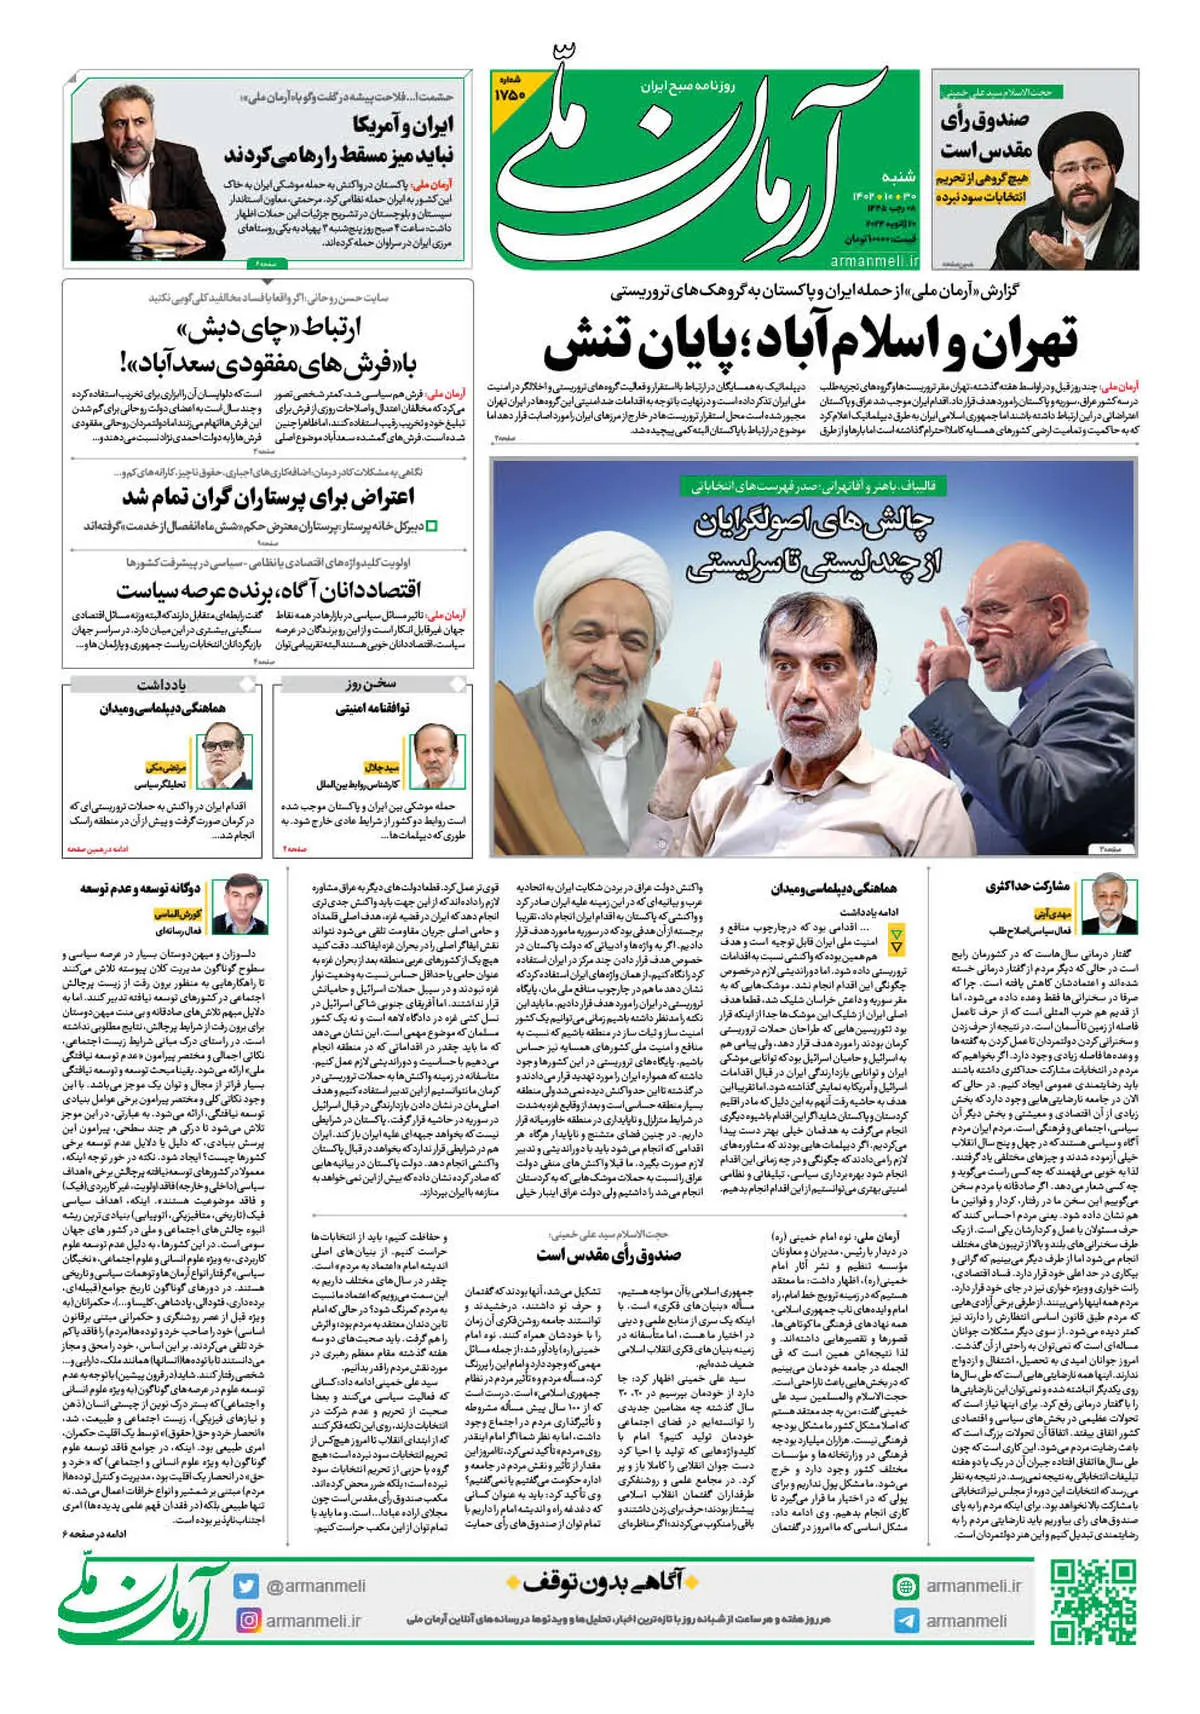 روزنامه آرمان ملی - شنبه 30 دی - شماره 1750